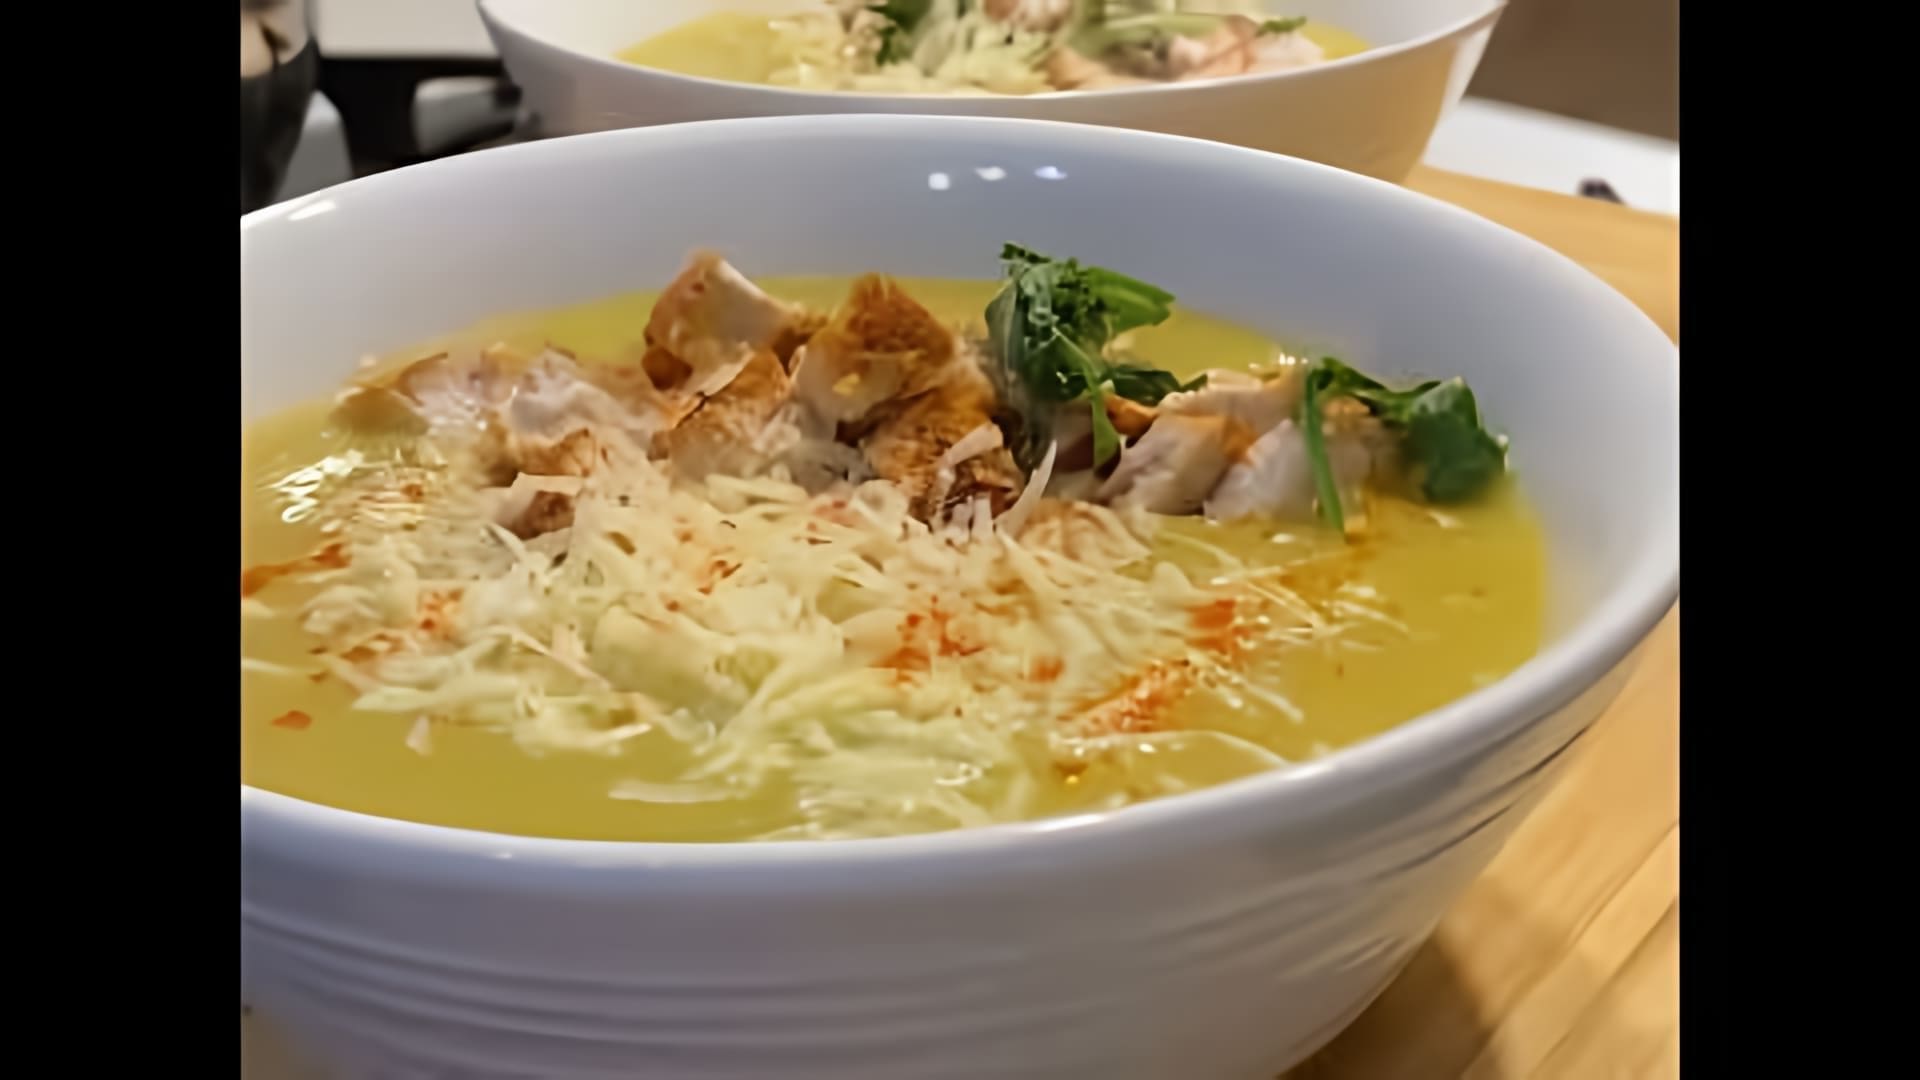 В этом видео демонстрируется процесс приготовления овощного супа-пюре